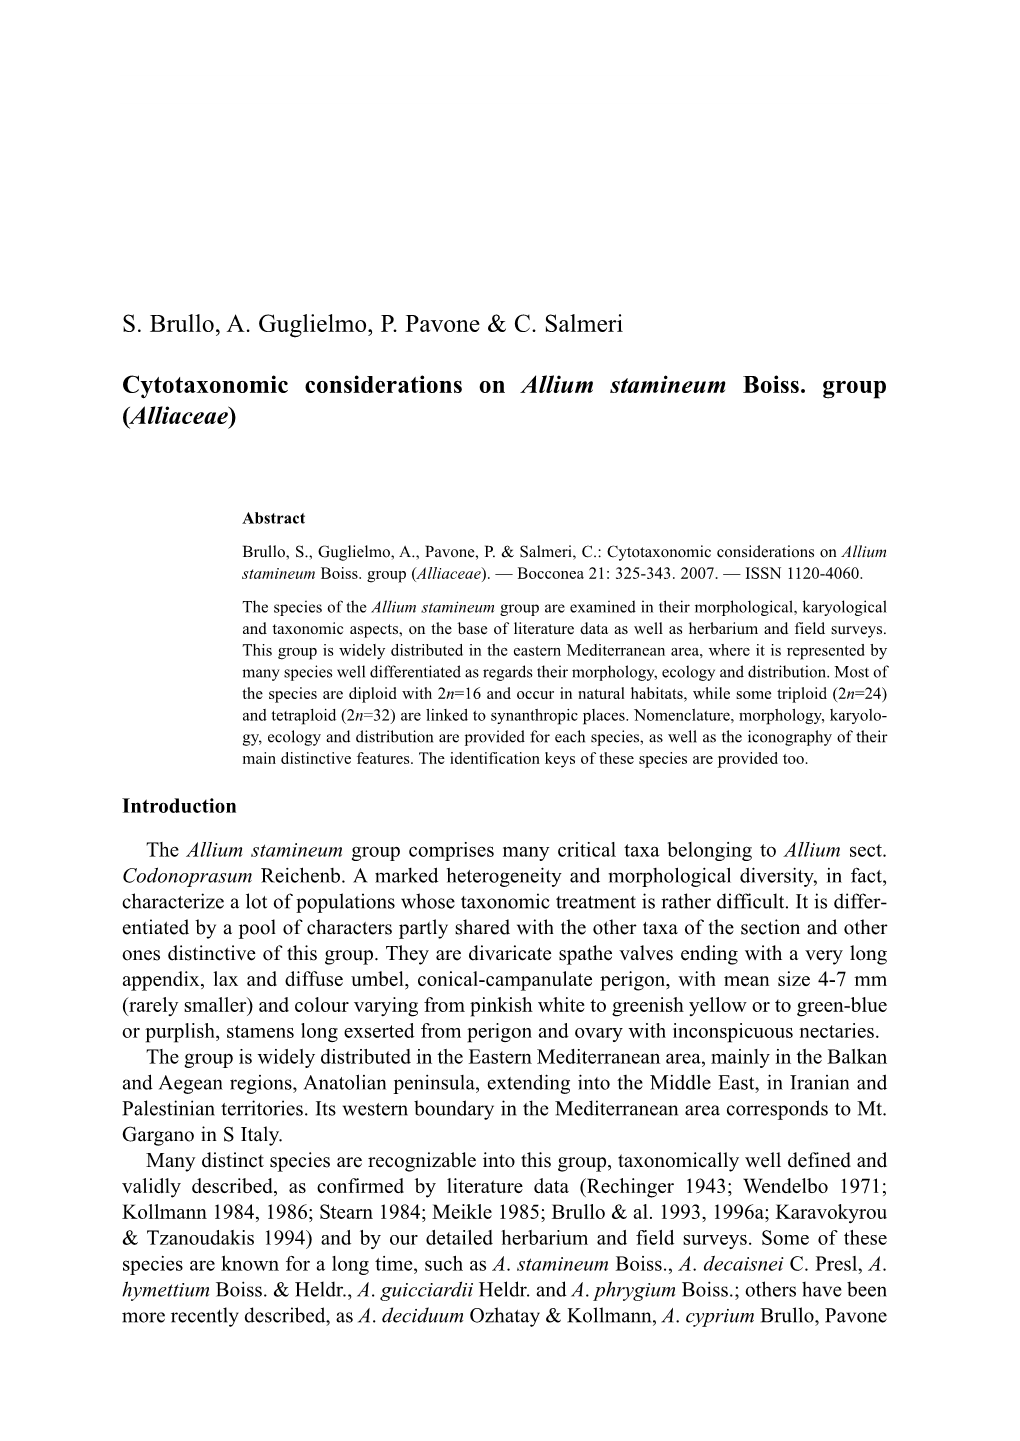 S. Brullo, A. Guglielmo, P. Pavone & C. Salmeri Cytotaxonomic